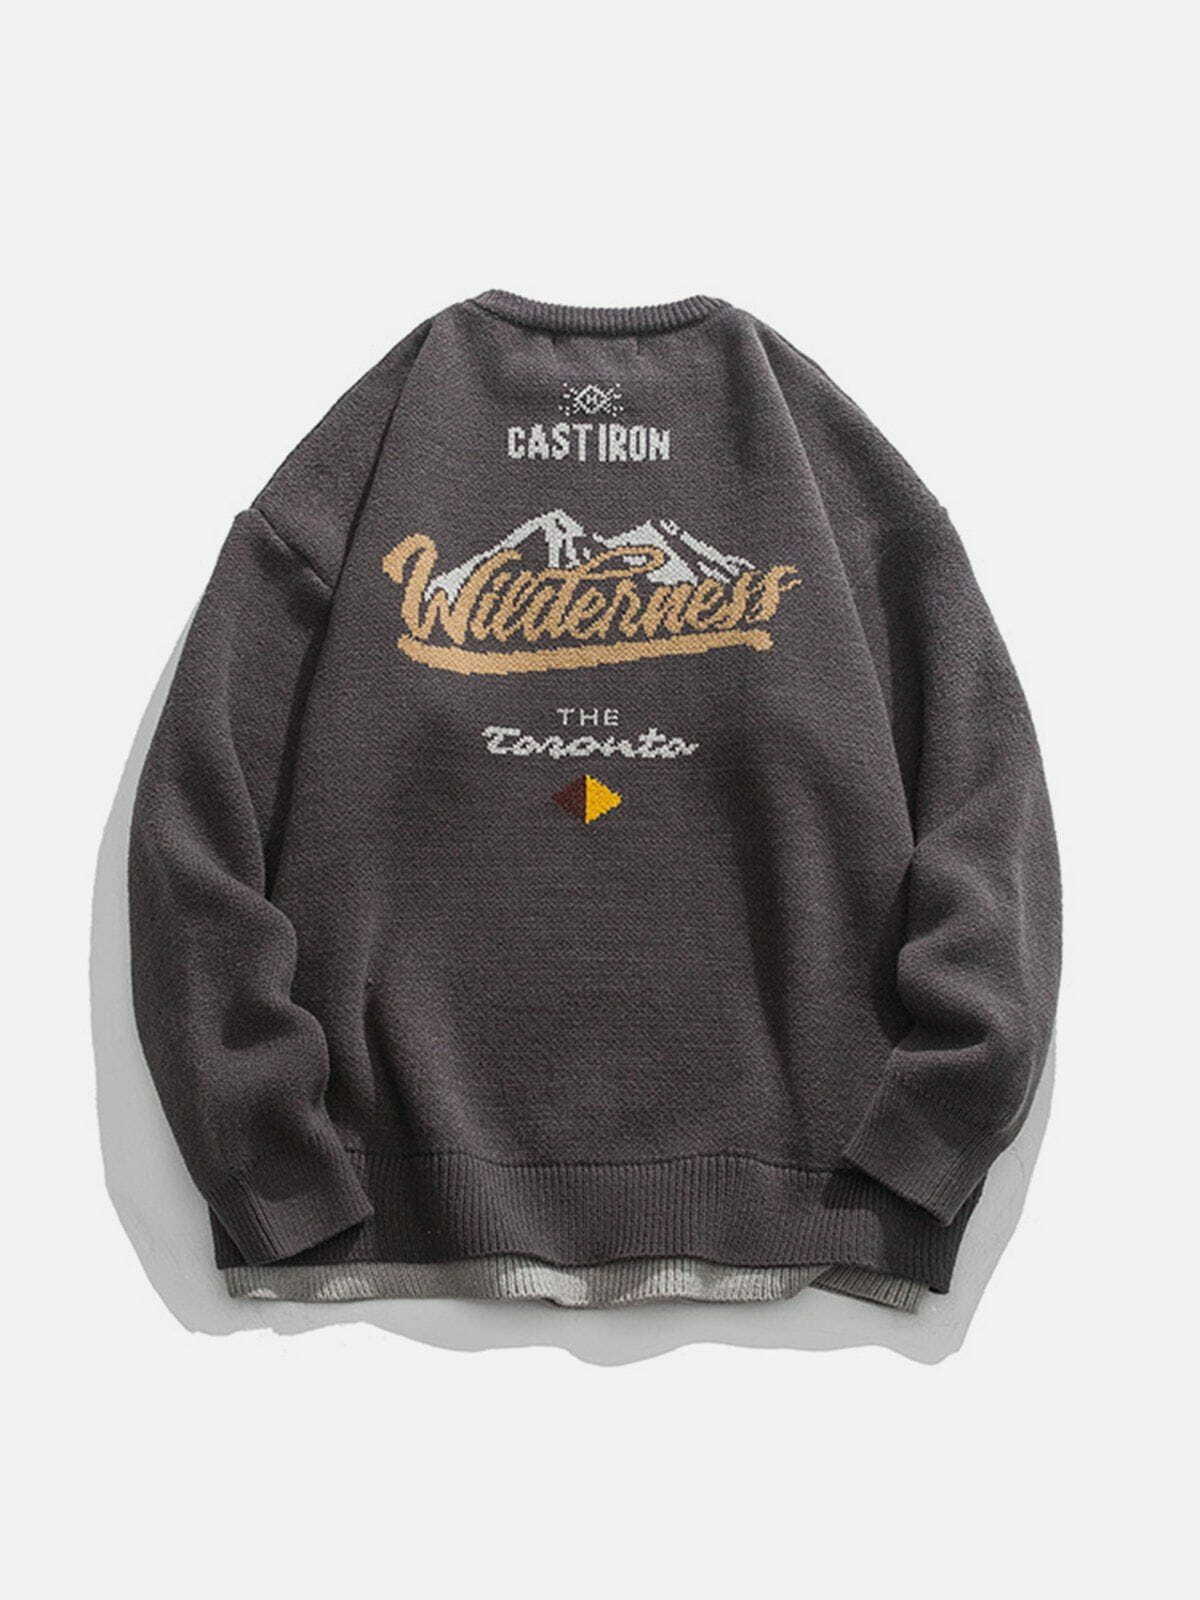 mountain peak jacquard sweater edgy y2k streetwear 5918